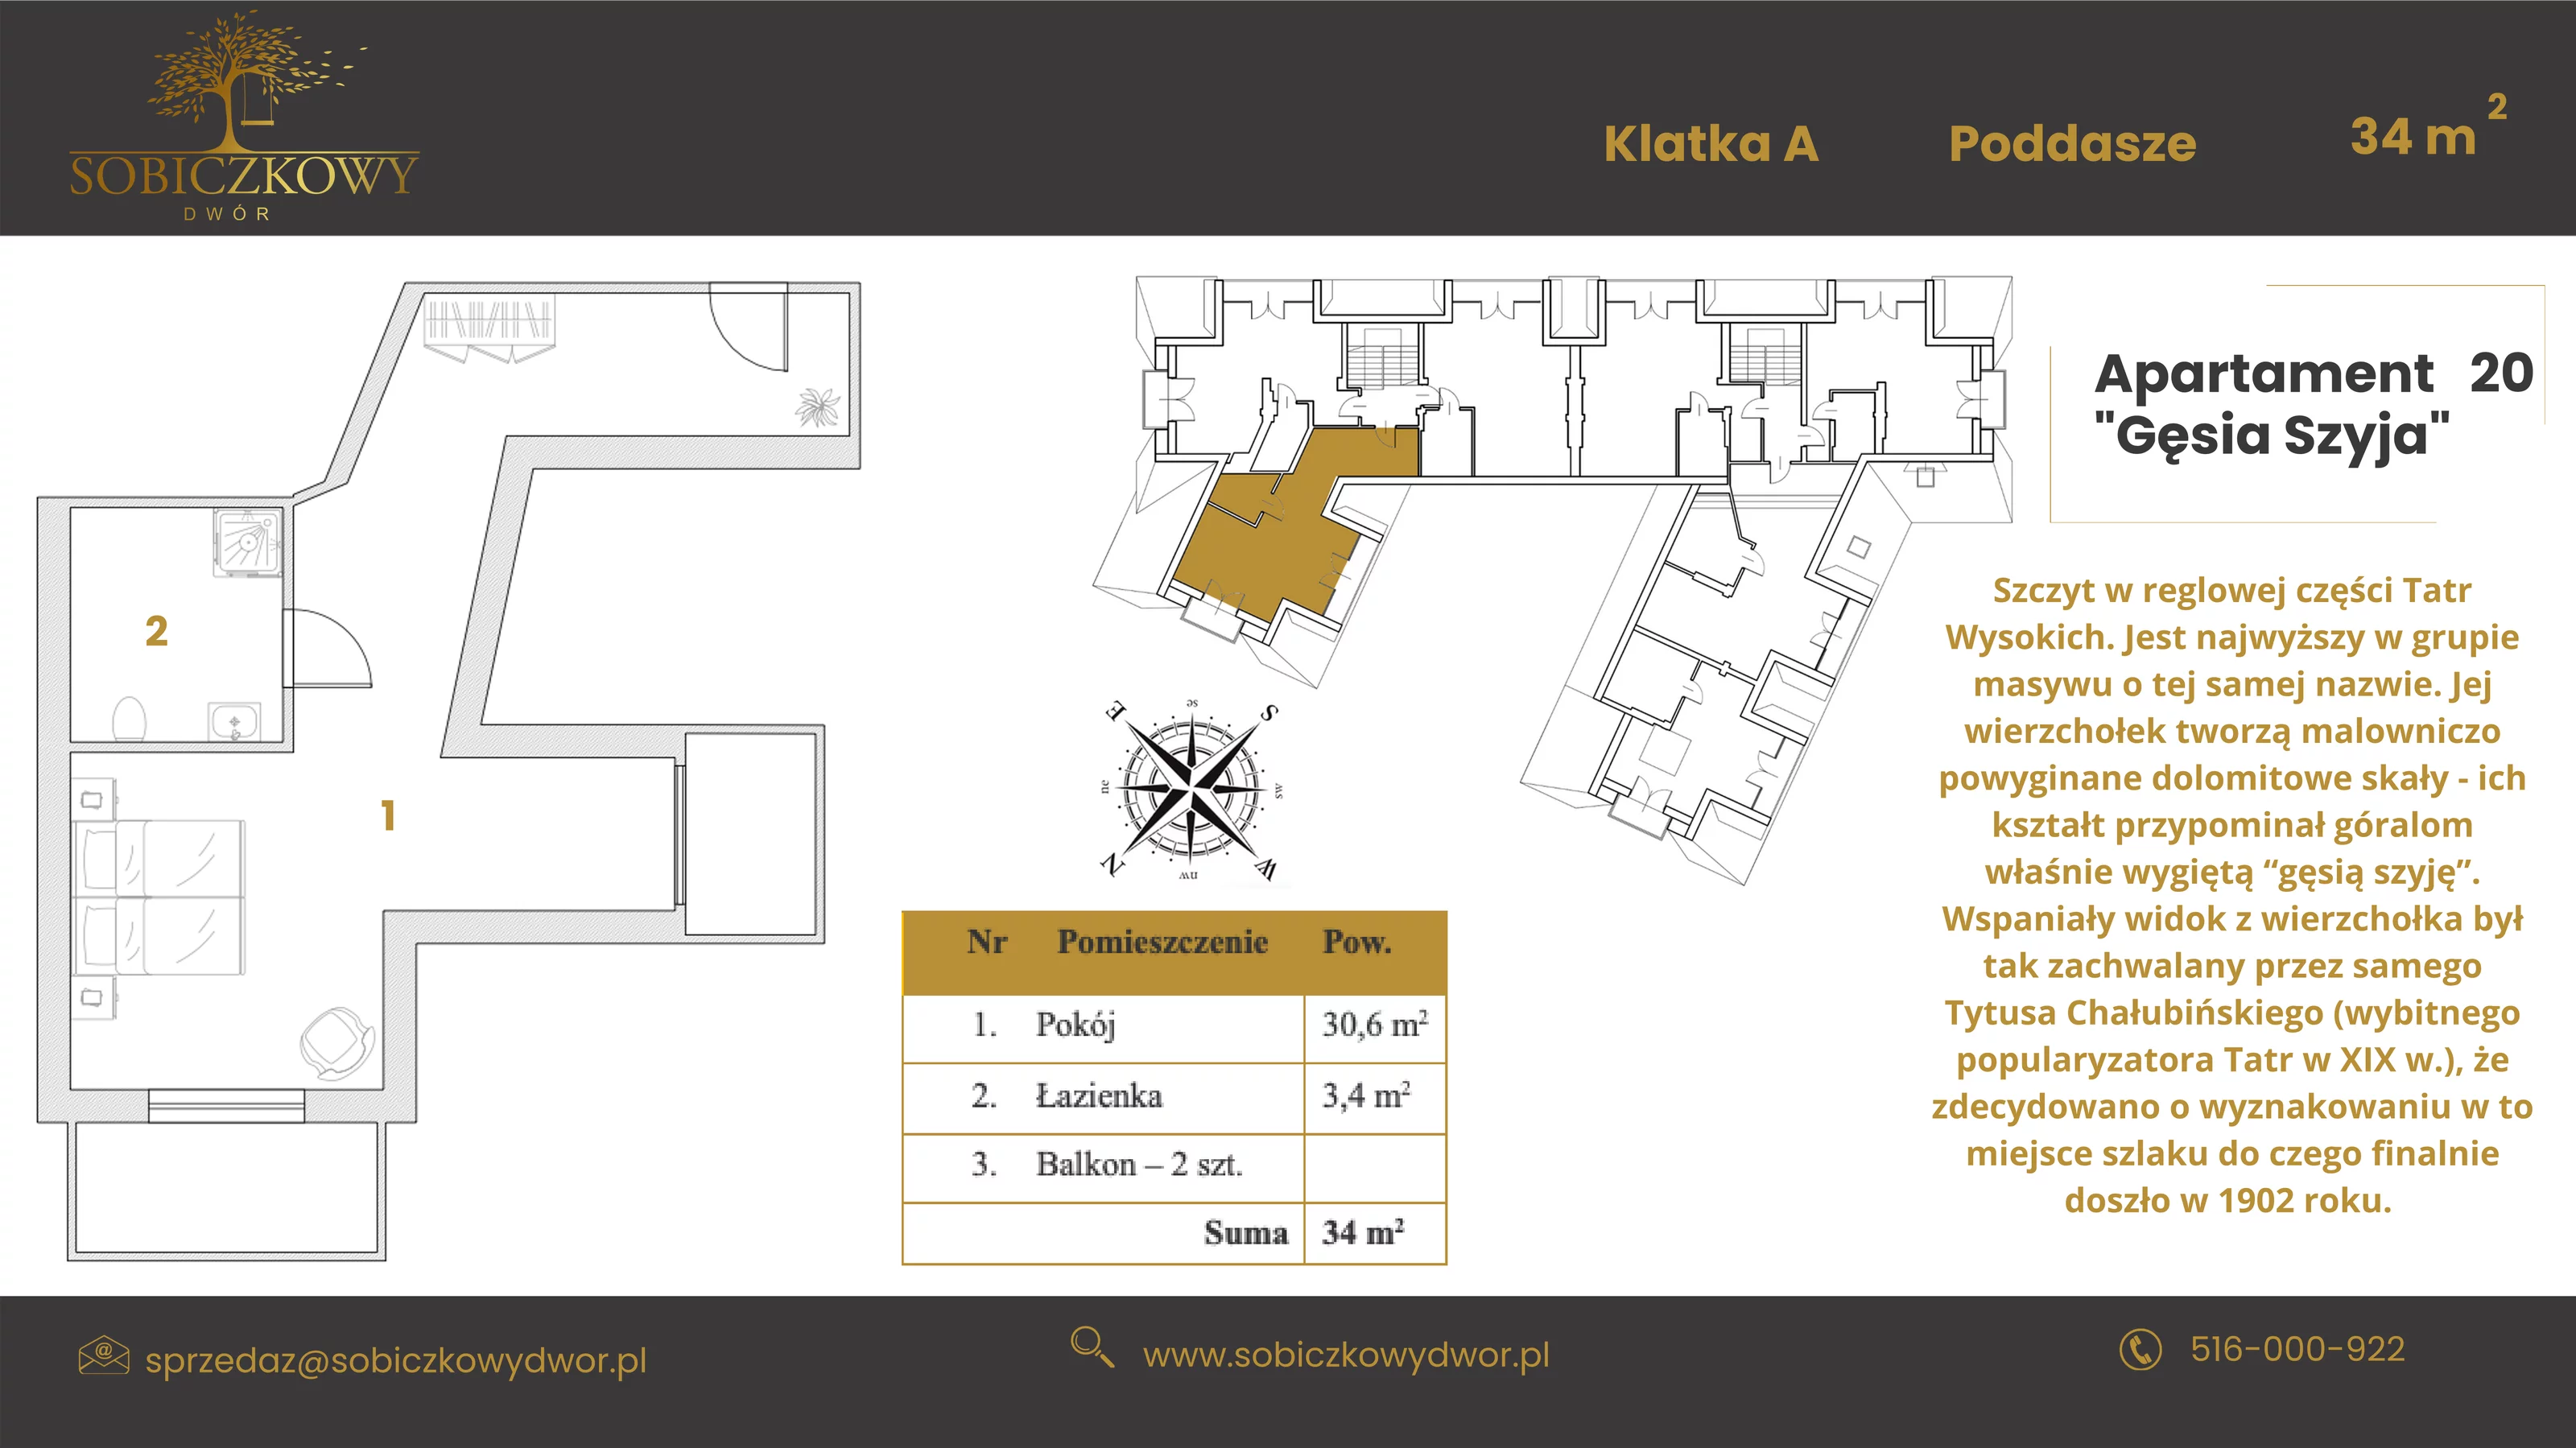 Apartament 34,40 m², piętro 2, oferta nr 20 "Gęsia Szyja", Sobiczkowy Dwór, Kościelisko, ul. Sobiczkowa Bór 1